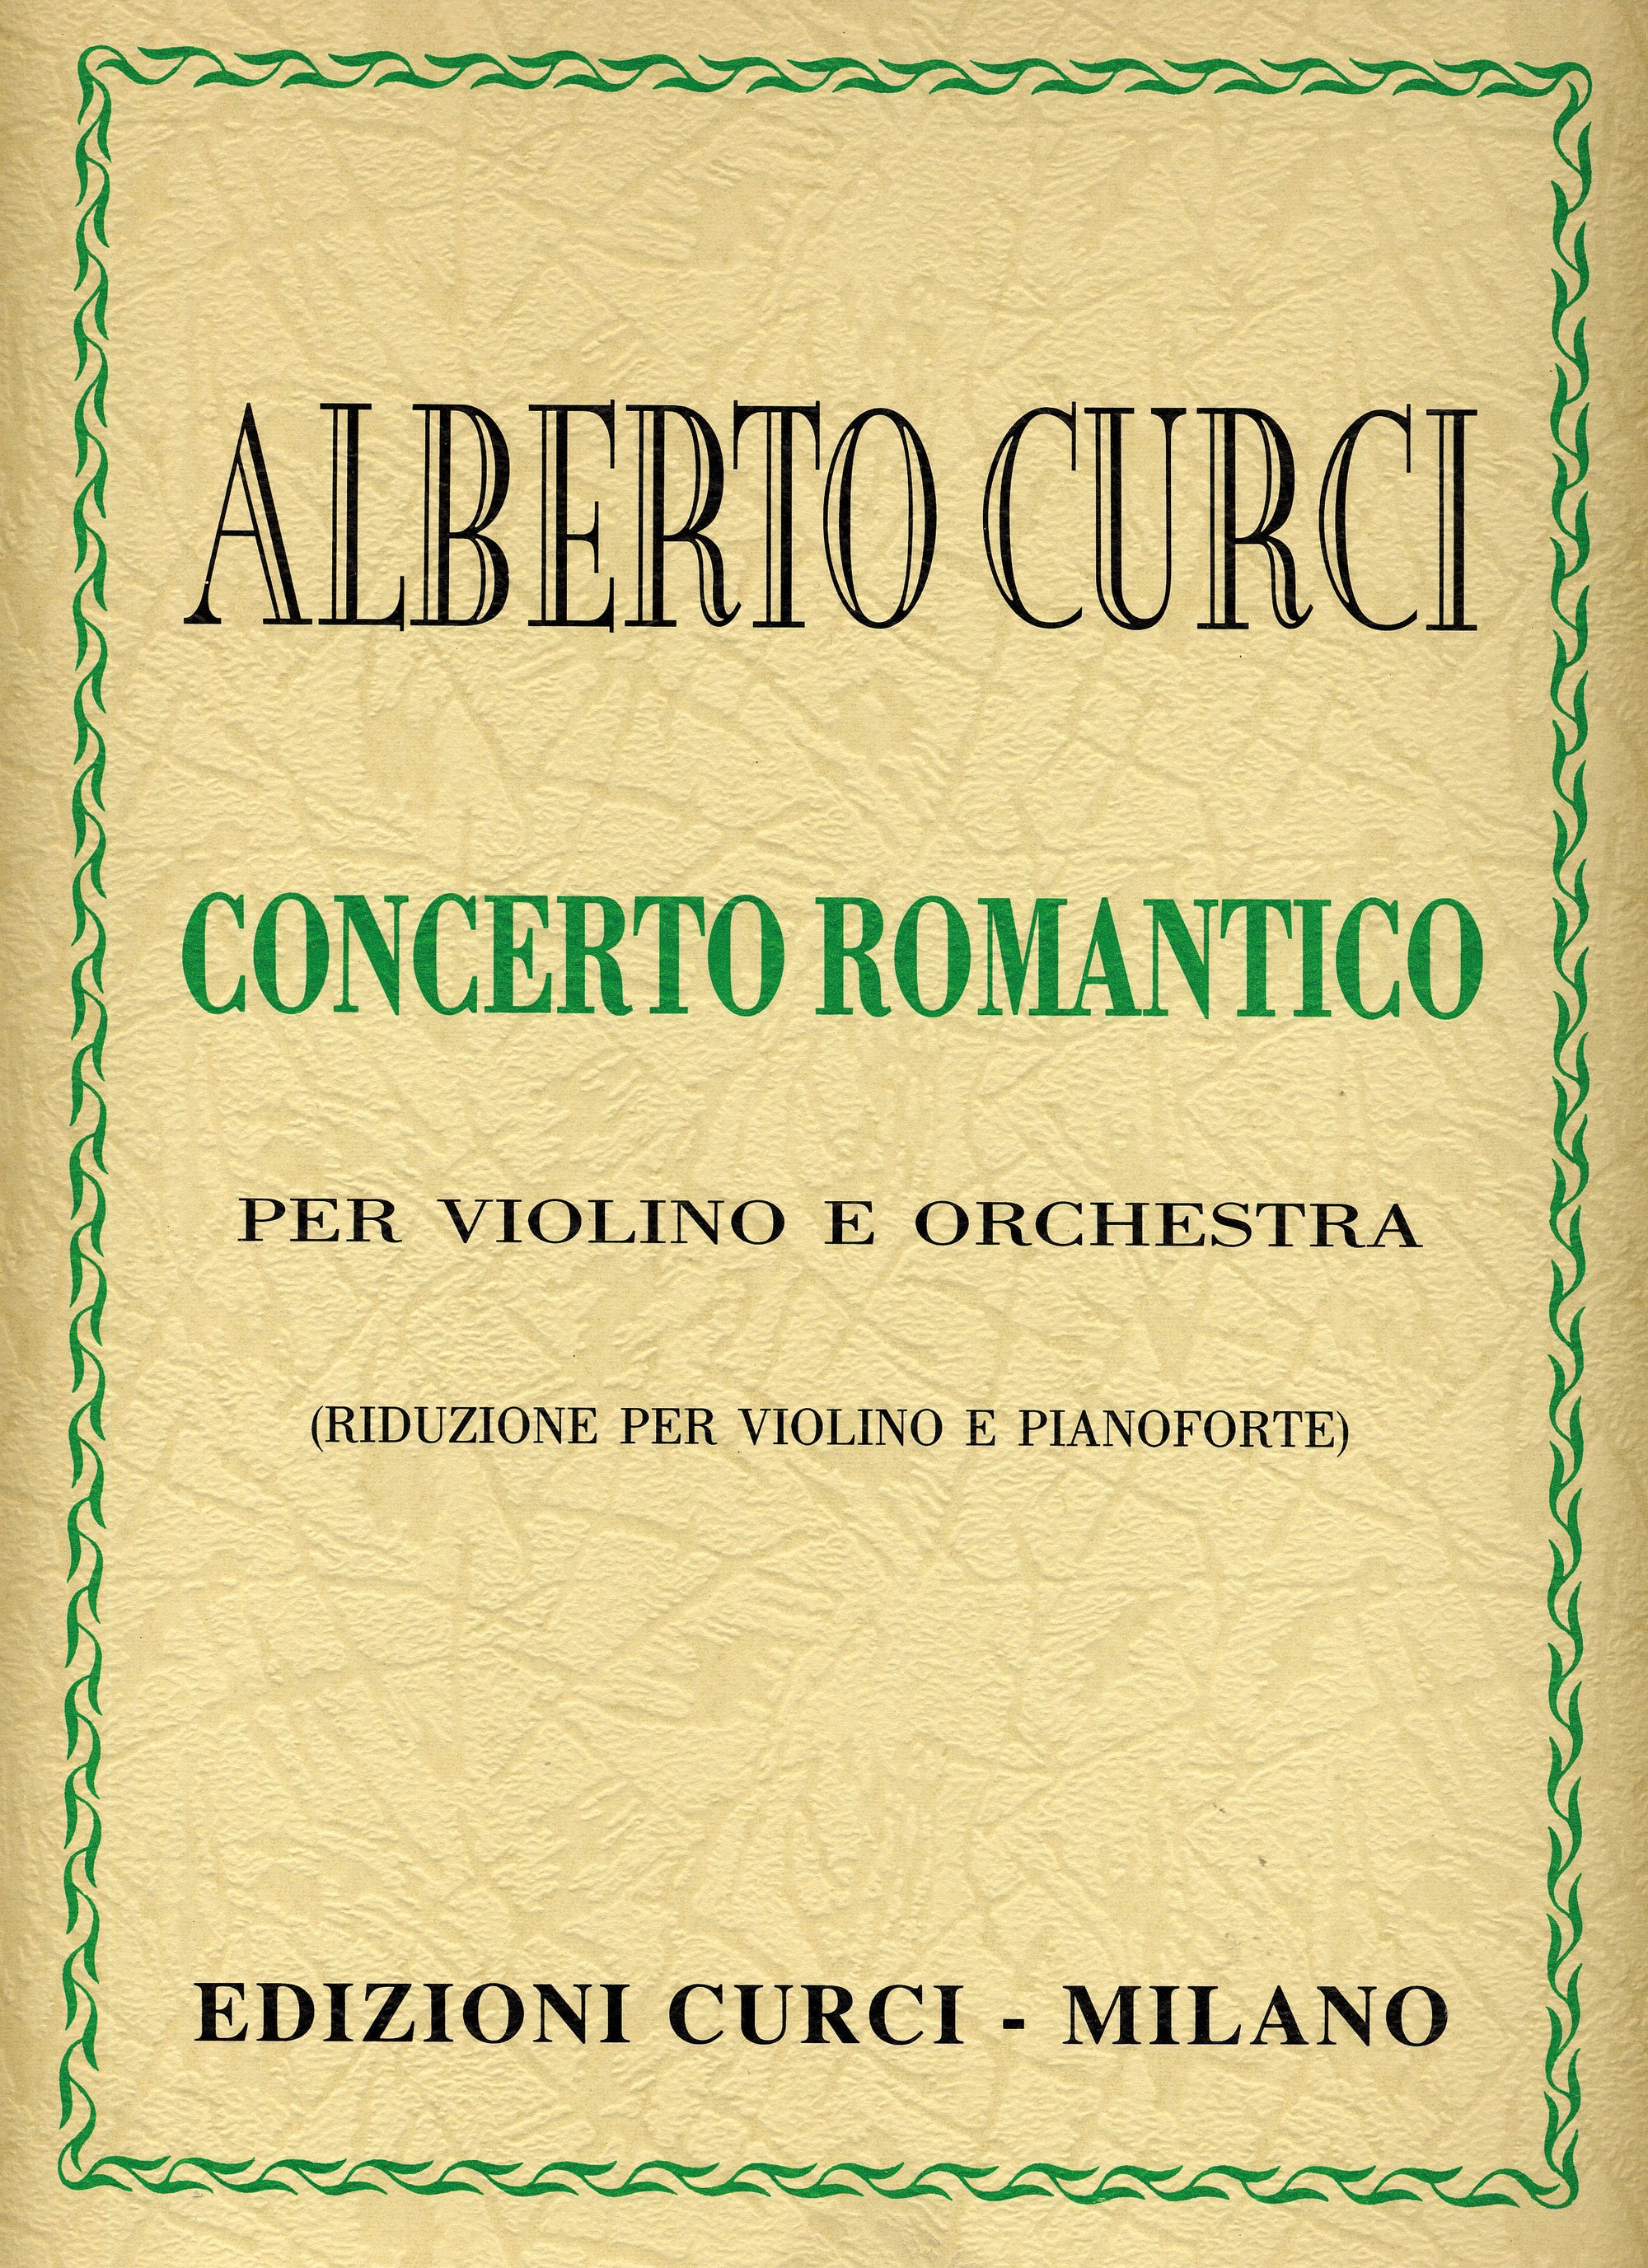 Curci: Violin Concerto romantico